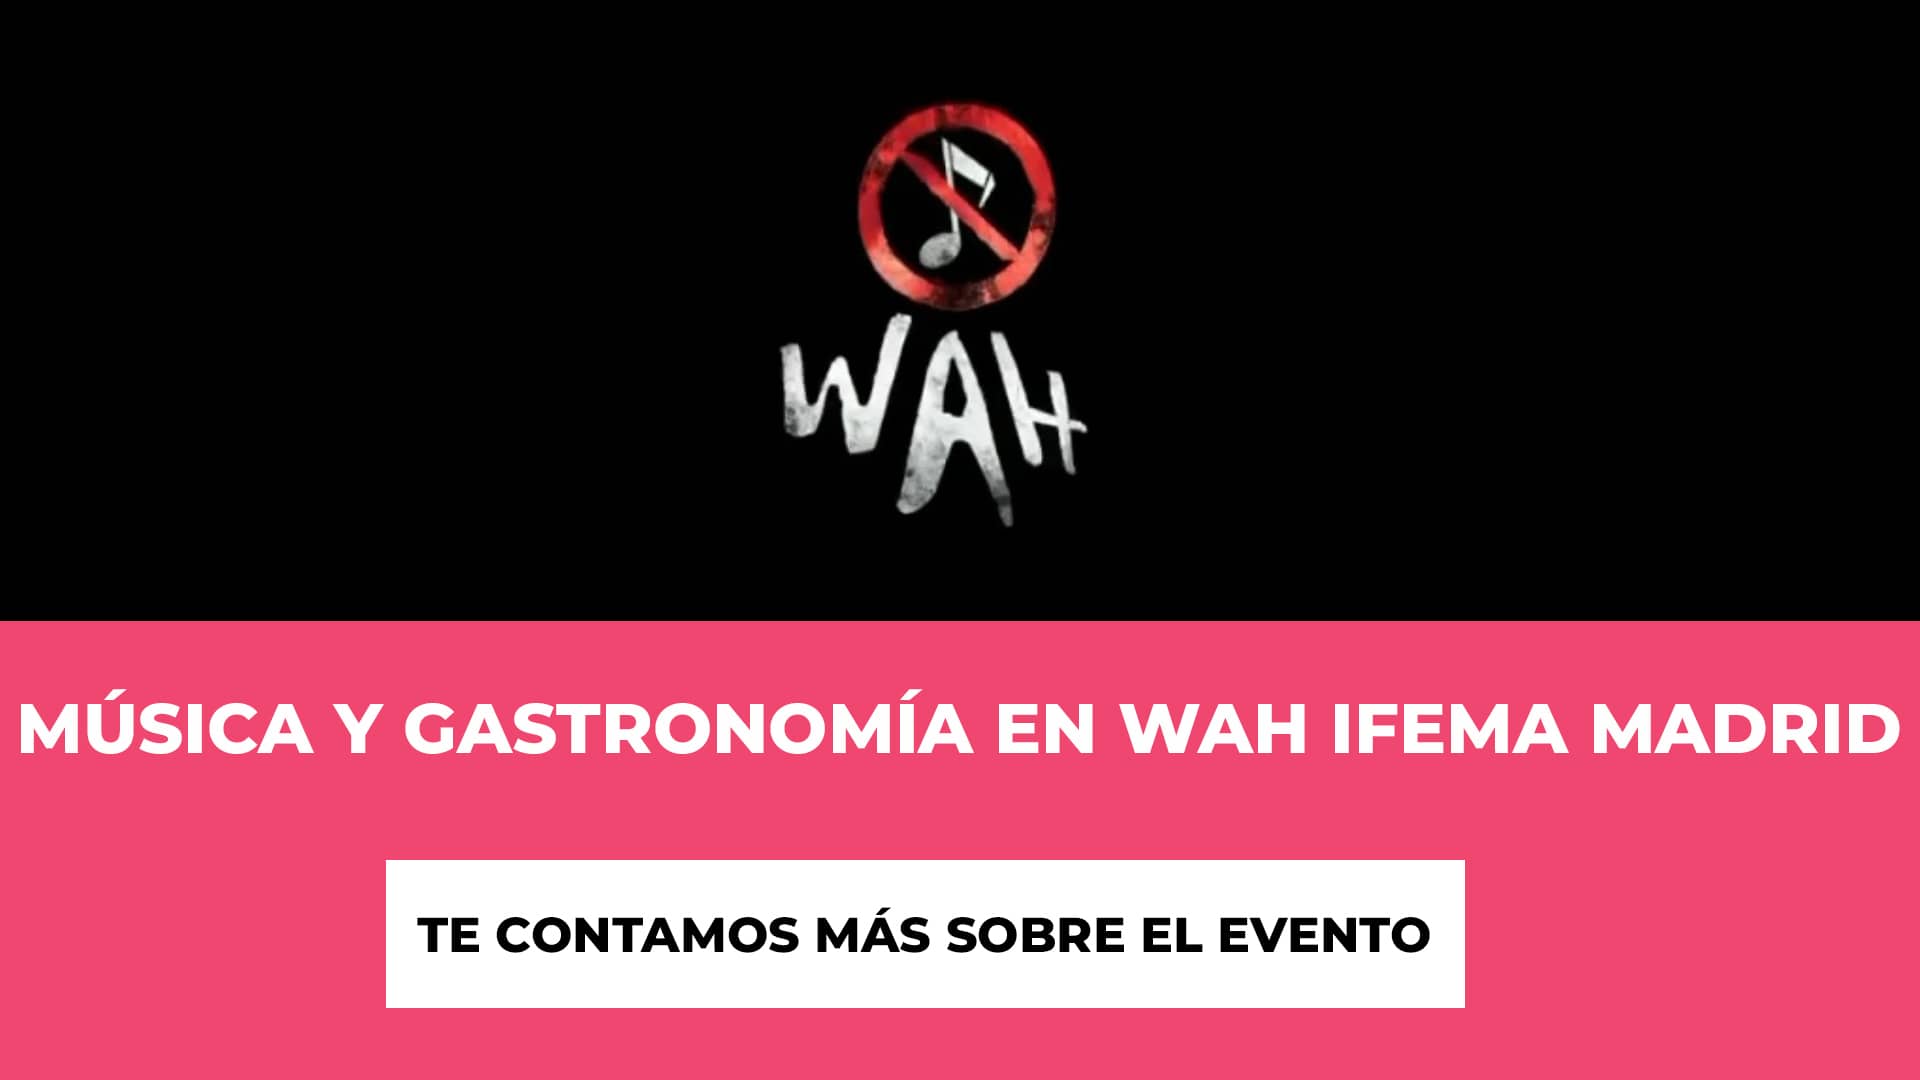 Música y Gastronomía en WAH IFEMA Madrid - Horario - Fechas - Precio de las Entradas - Estructura del Evento -Características Destacadas